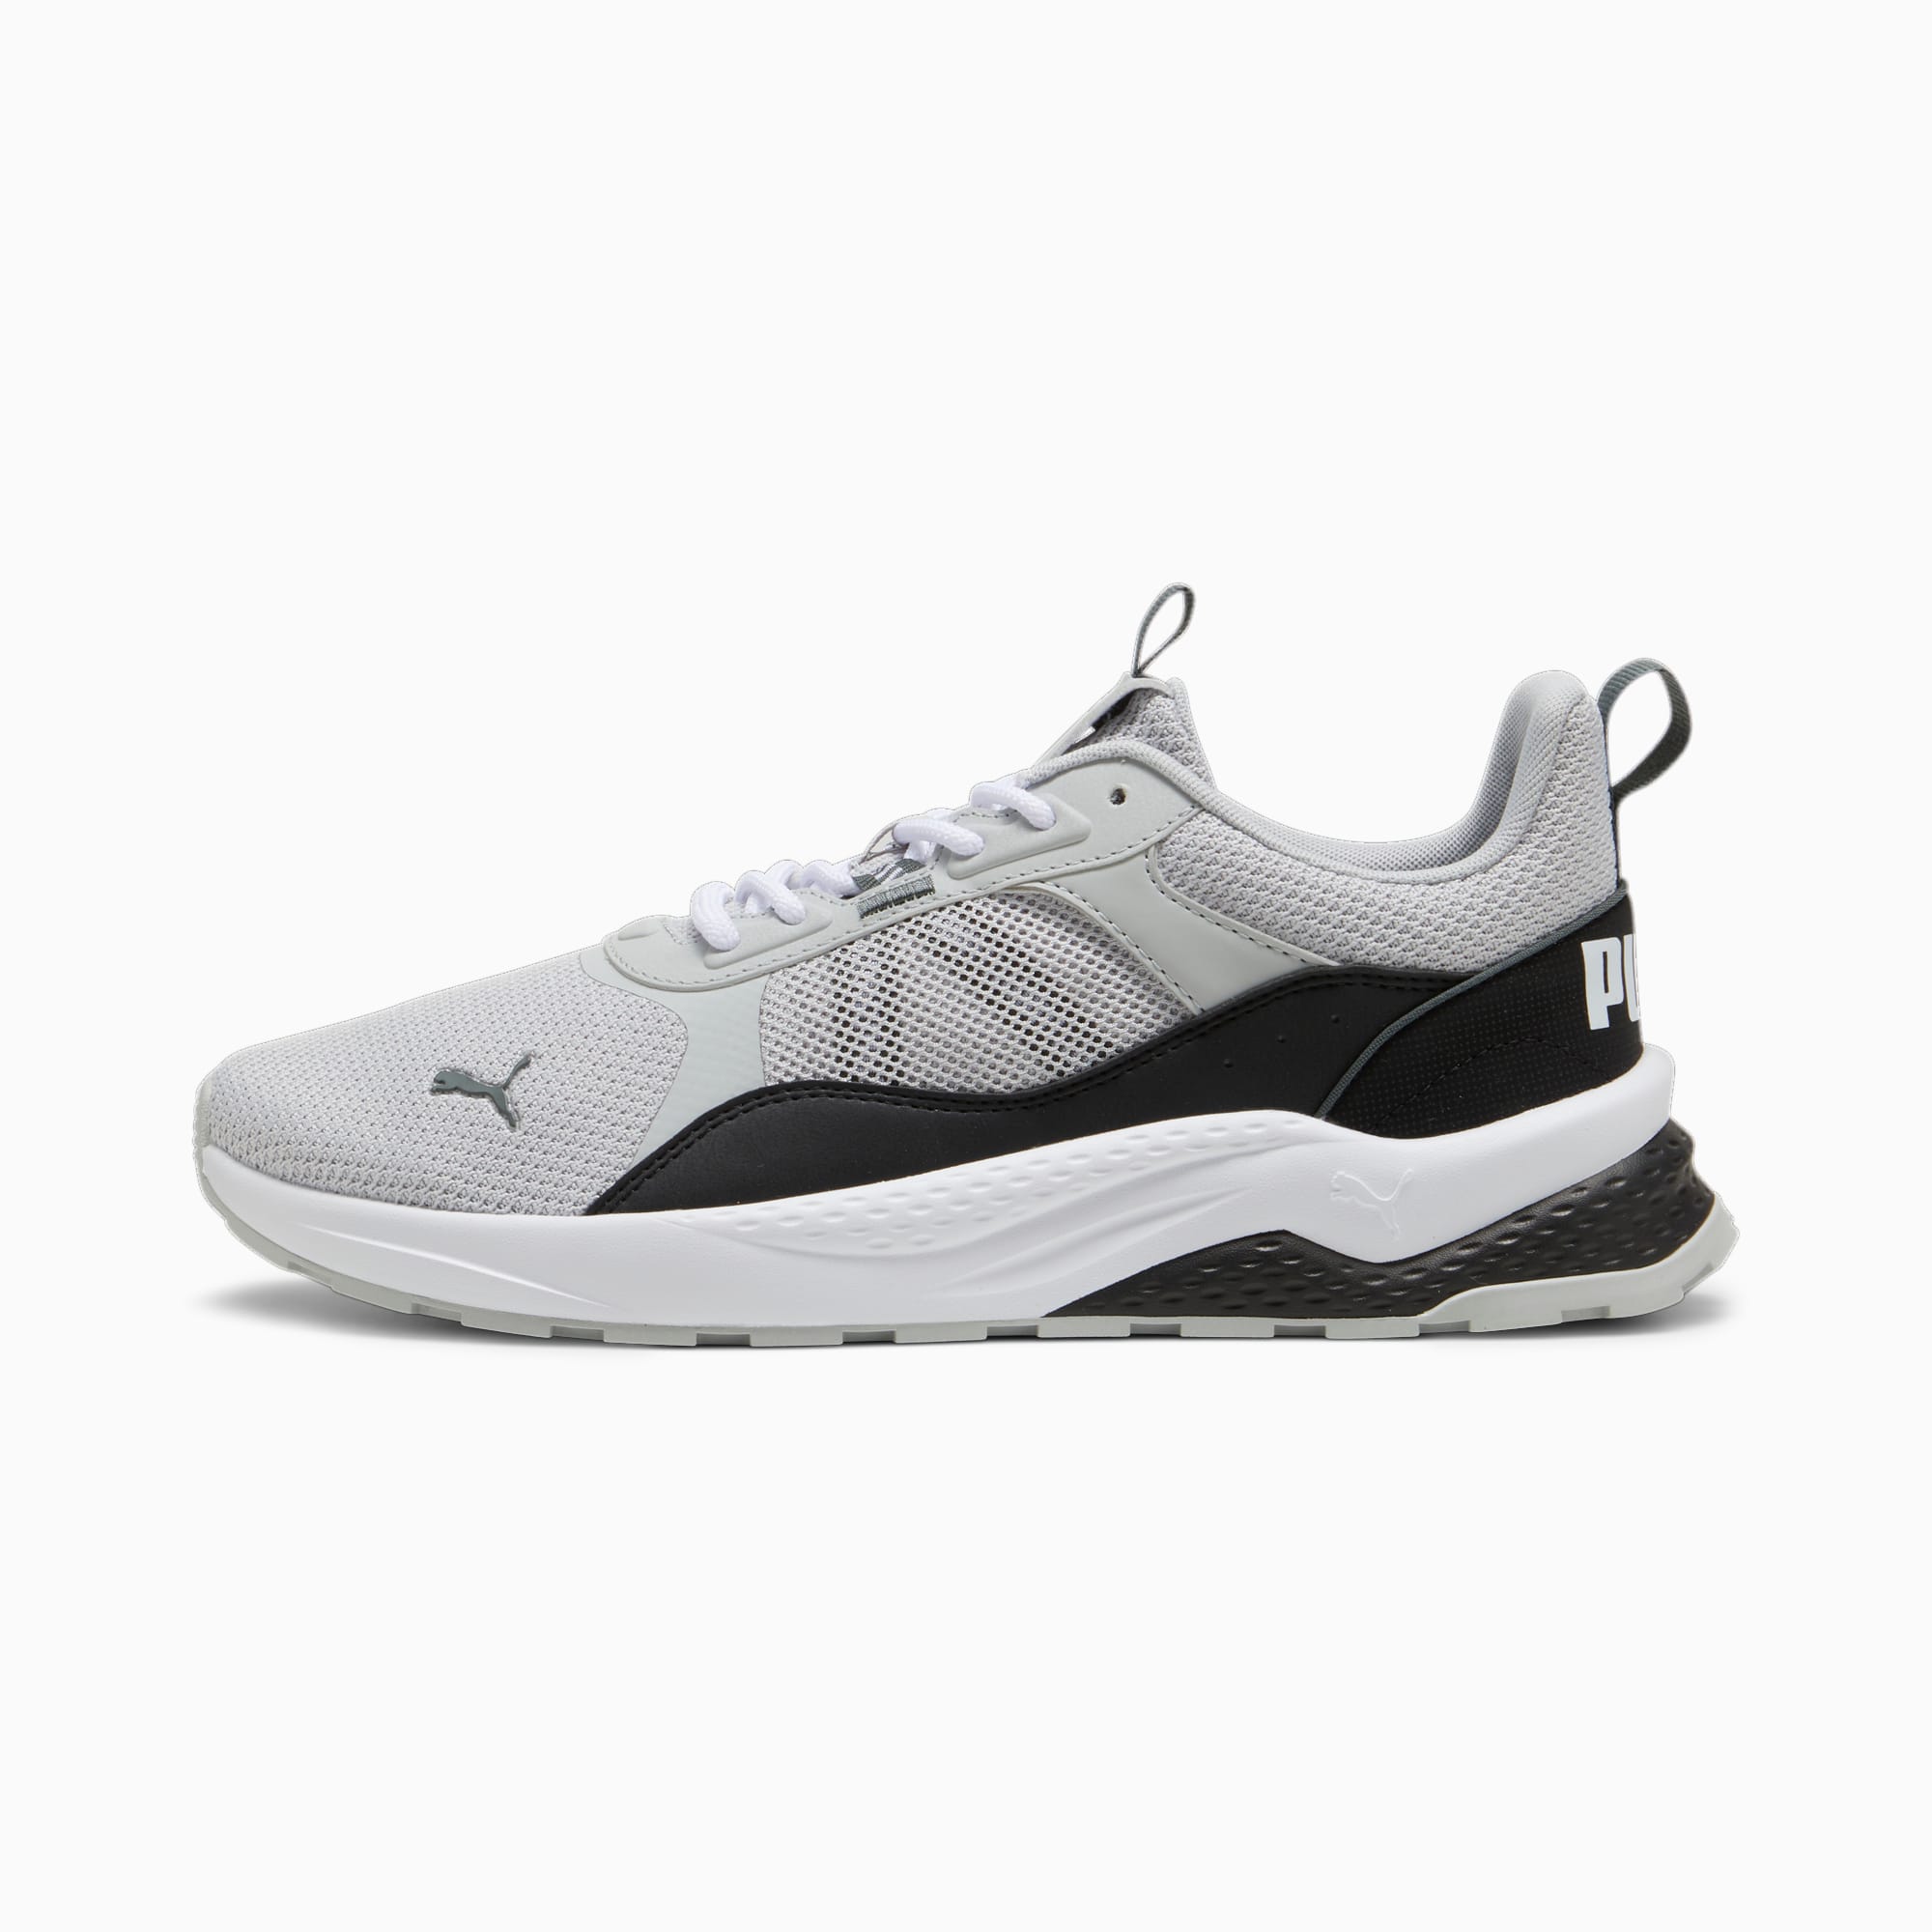 PUMA Chaussure Sneakers Anzarun 2.0, Blanc/Noir/Gris